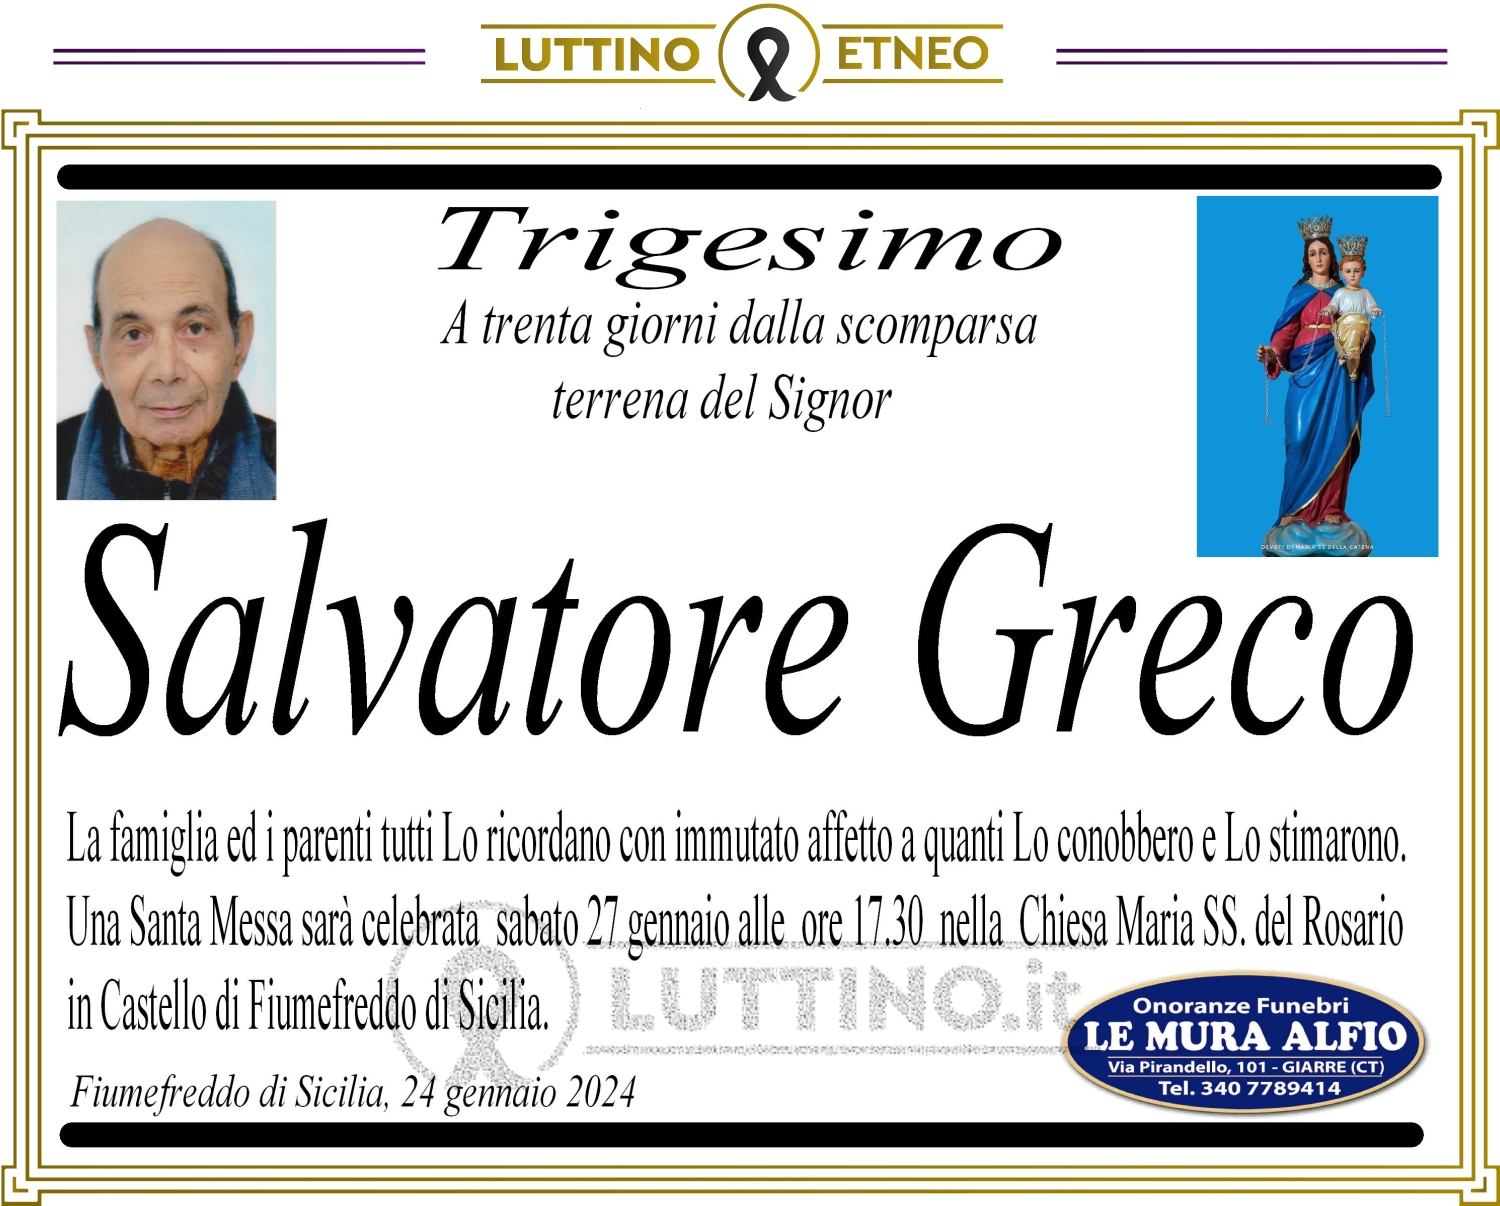 Salvatore Greco